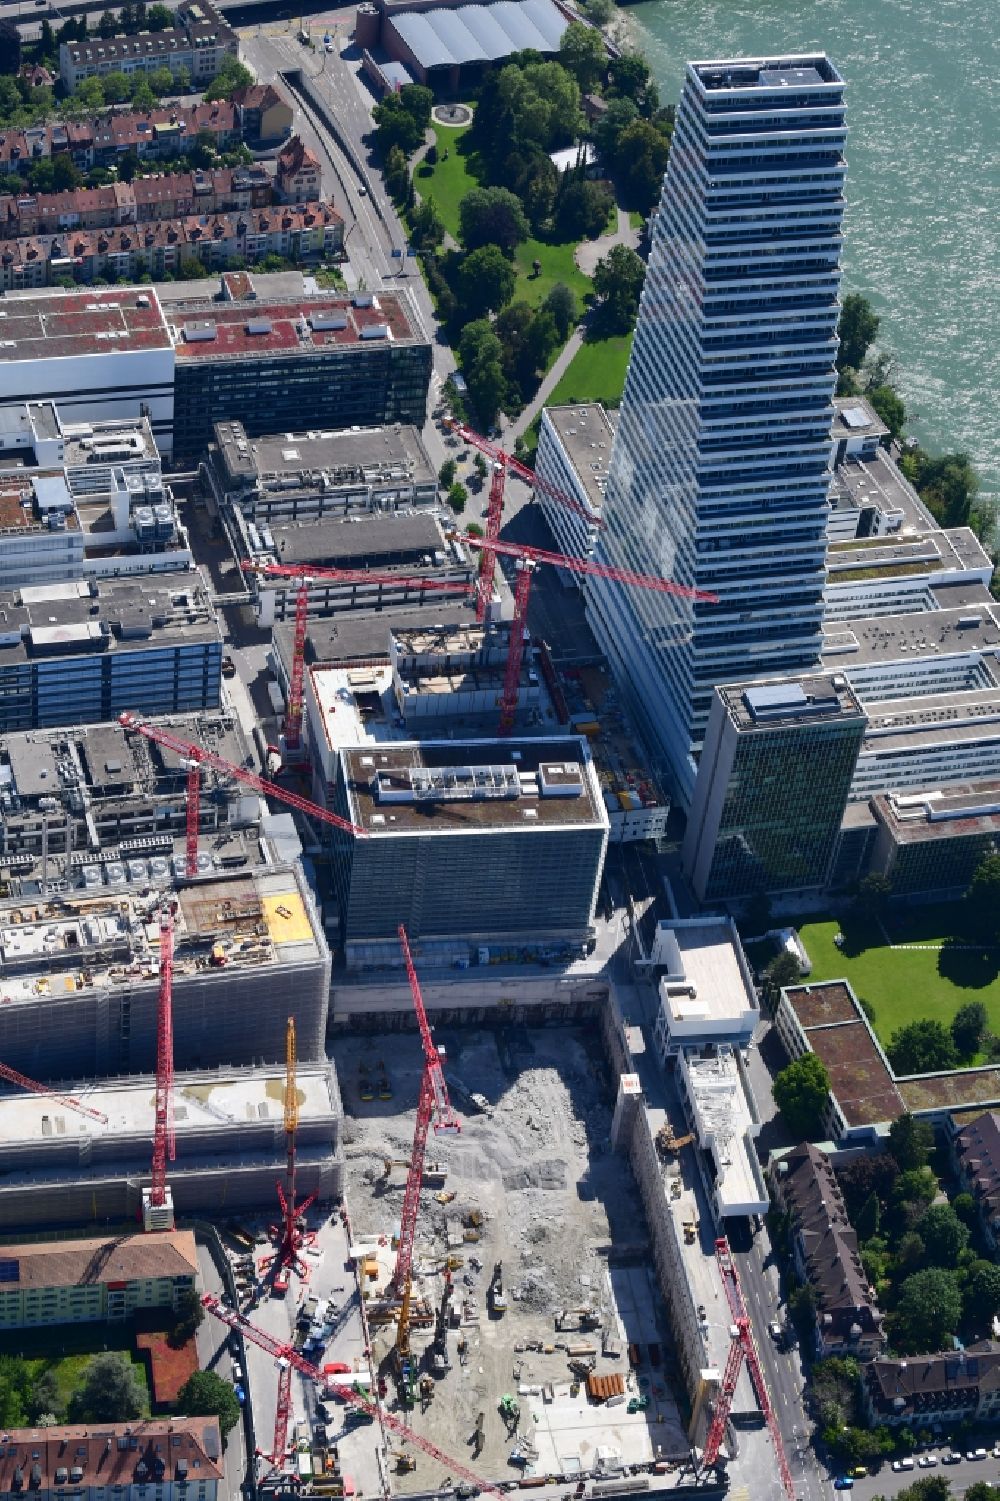 Luftaufnahme Basel - Erweiterungs- Baustellen auf dem Areal und Betriebsgelände der Pharmafirma Roche mit dem Roche- Turm - Hochhaus in Basel in der Schweiz